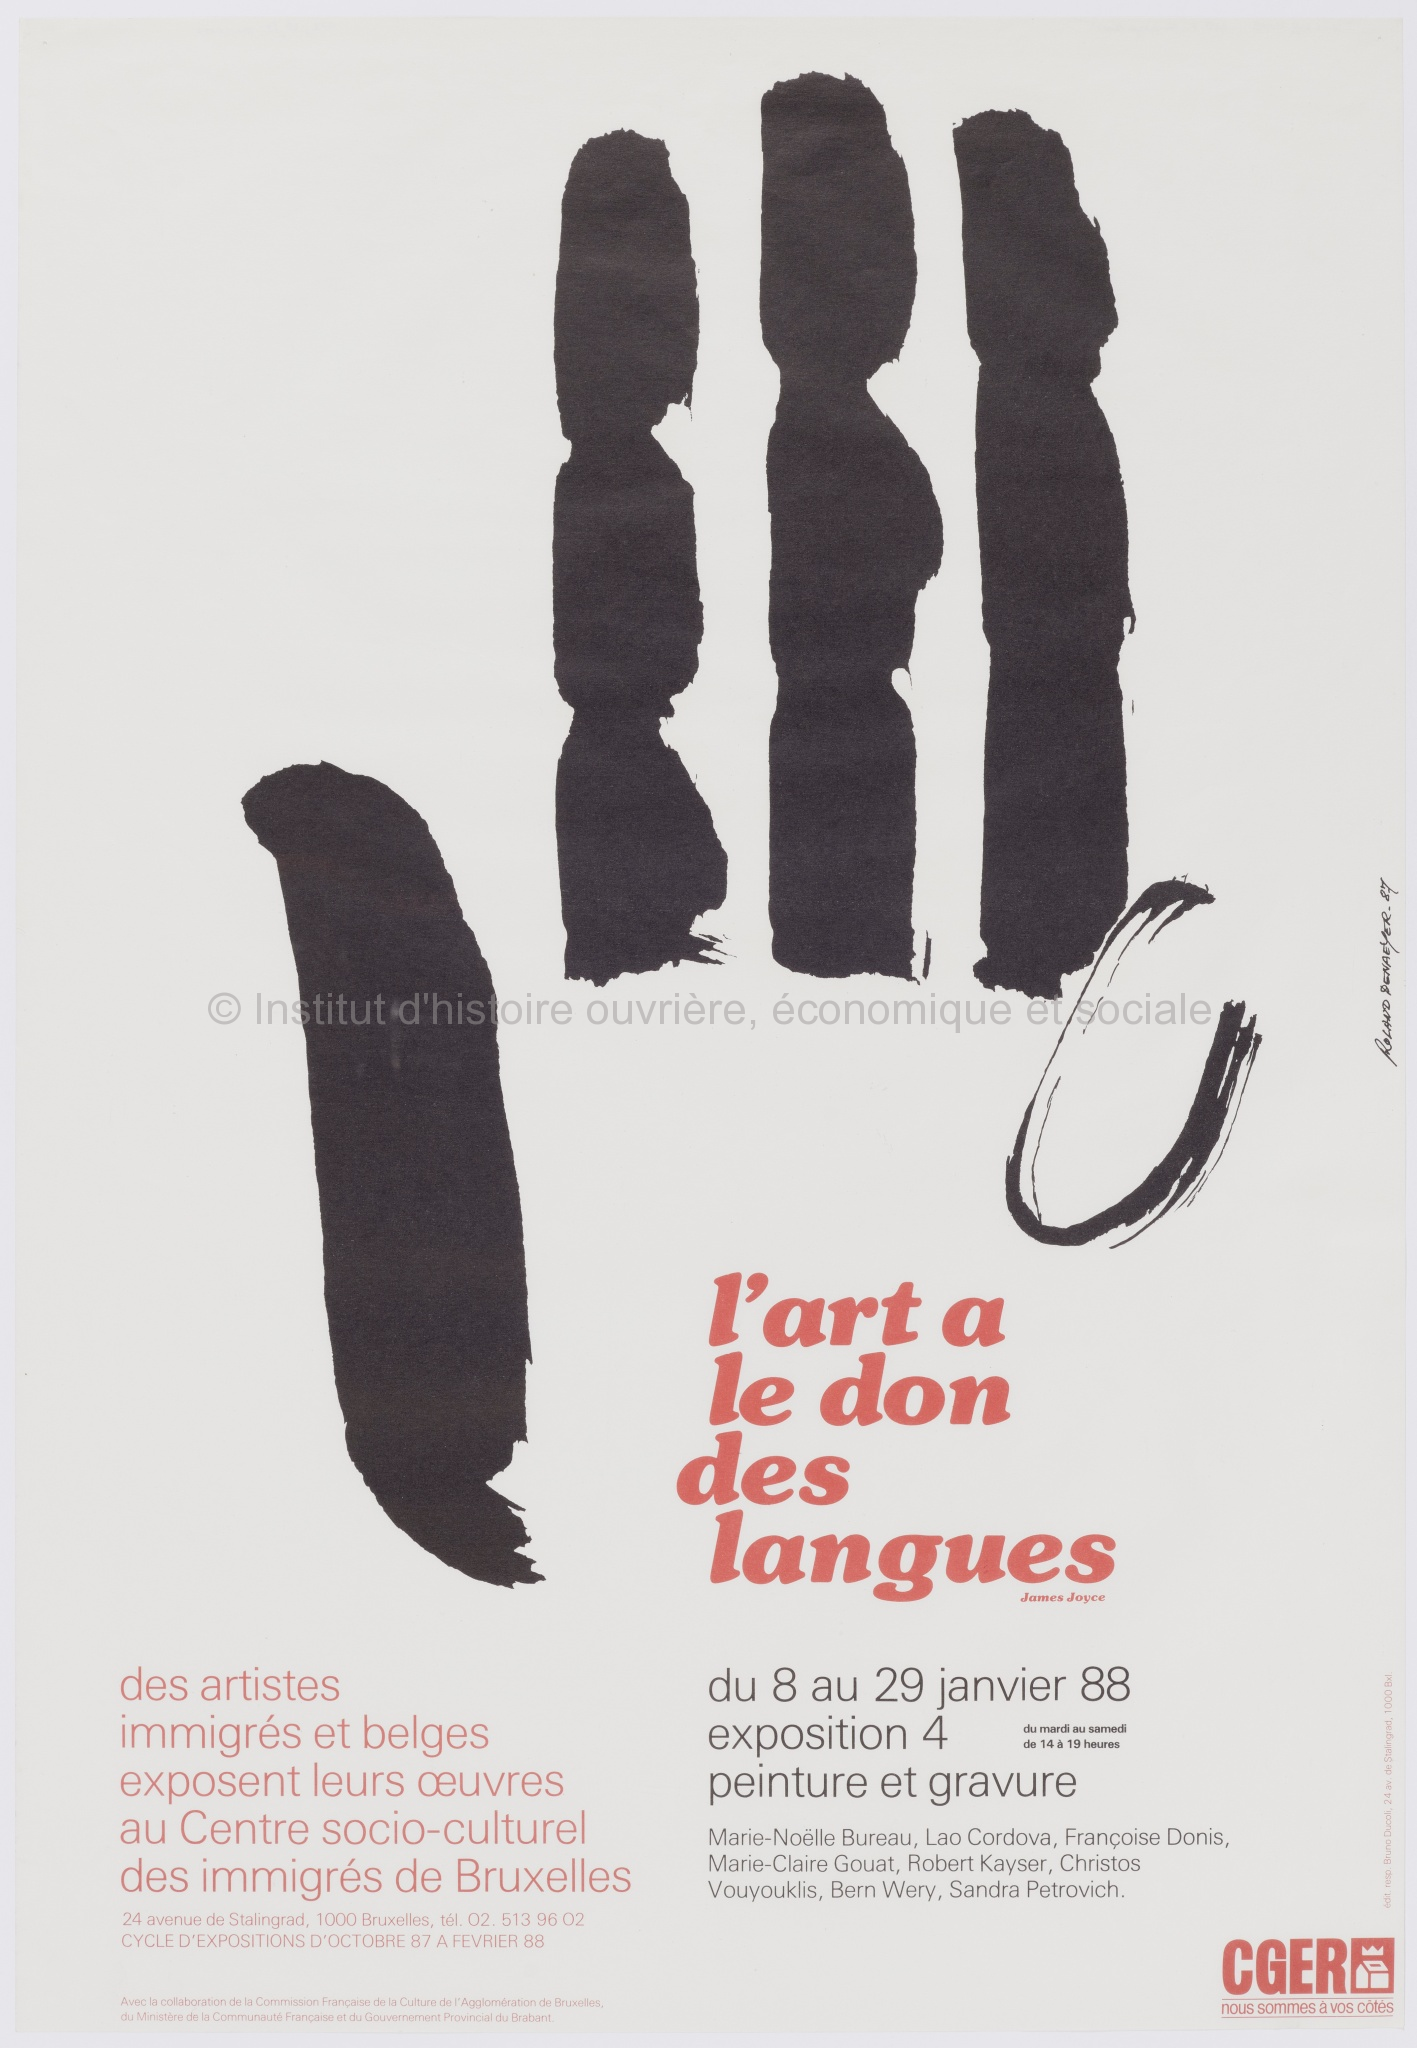 L'art à le don des langues (James Joyce). Des artistes immigrés et belges exposent leurs oeuvres au Centre socio-culturel des immigrés de Bruxelles du 2 au 23 octobre 87